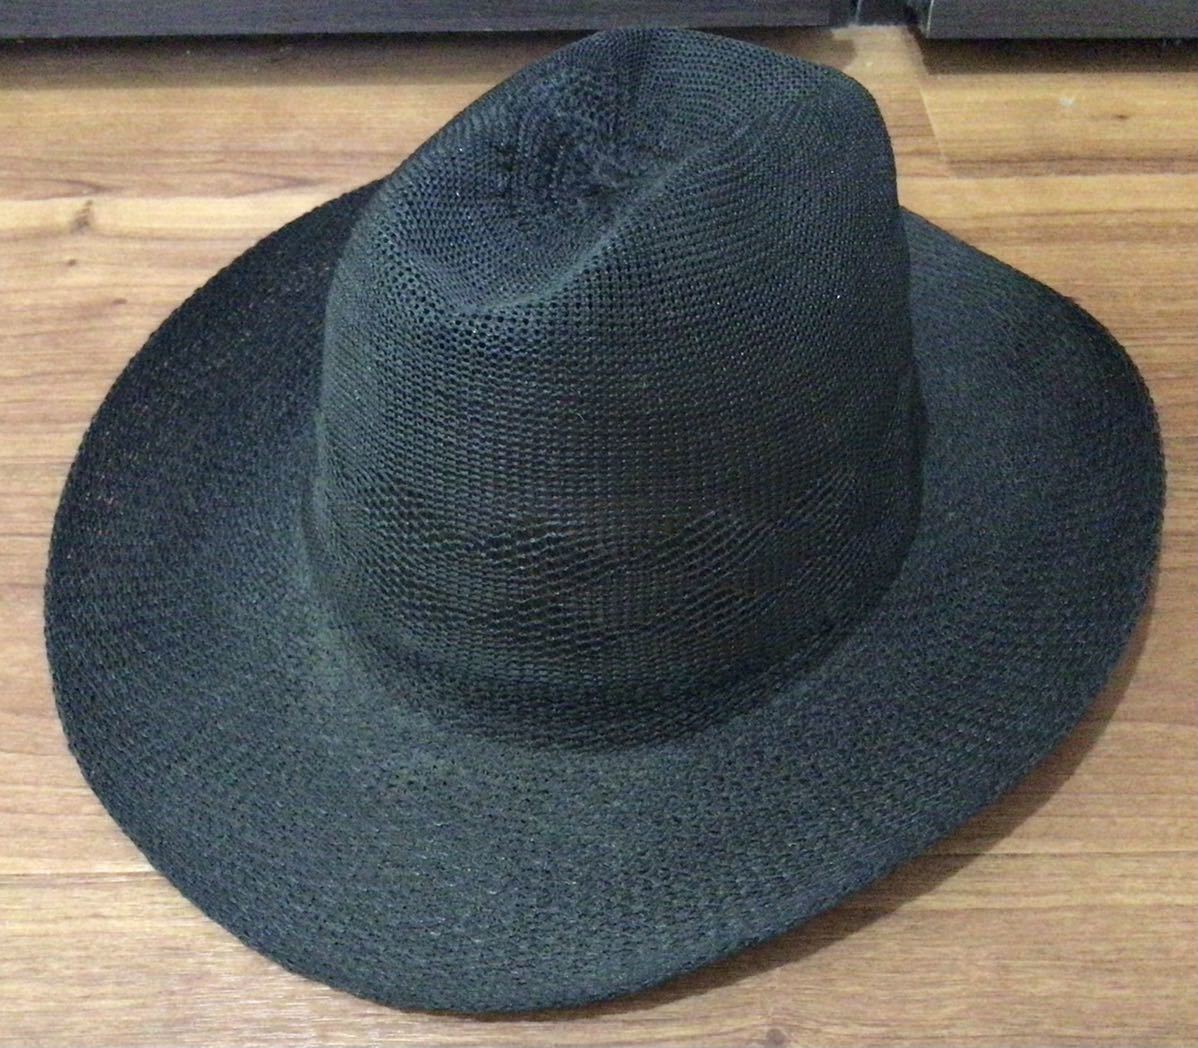 we Stanley s center k lease hat black * summer thing straw hat nylon ground speed .